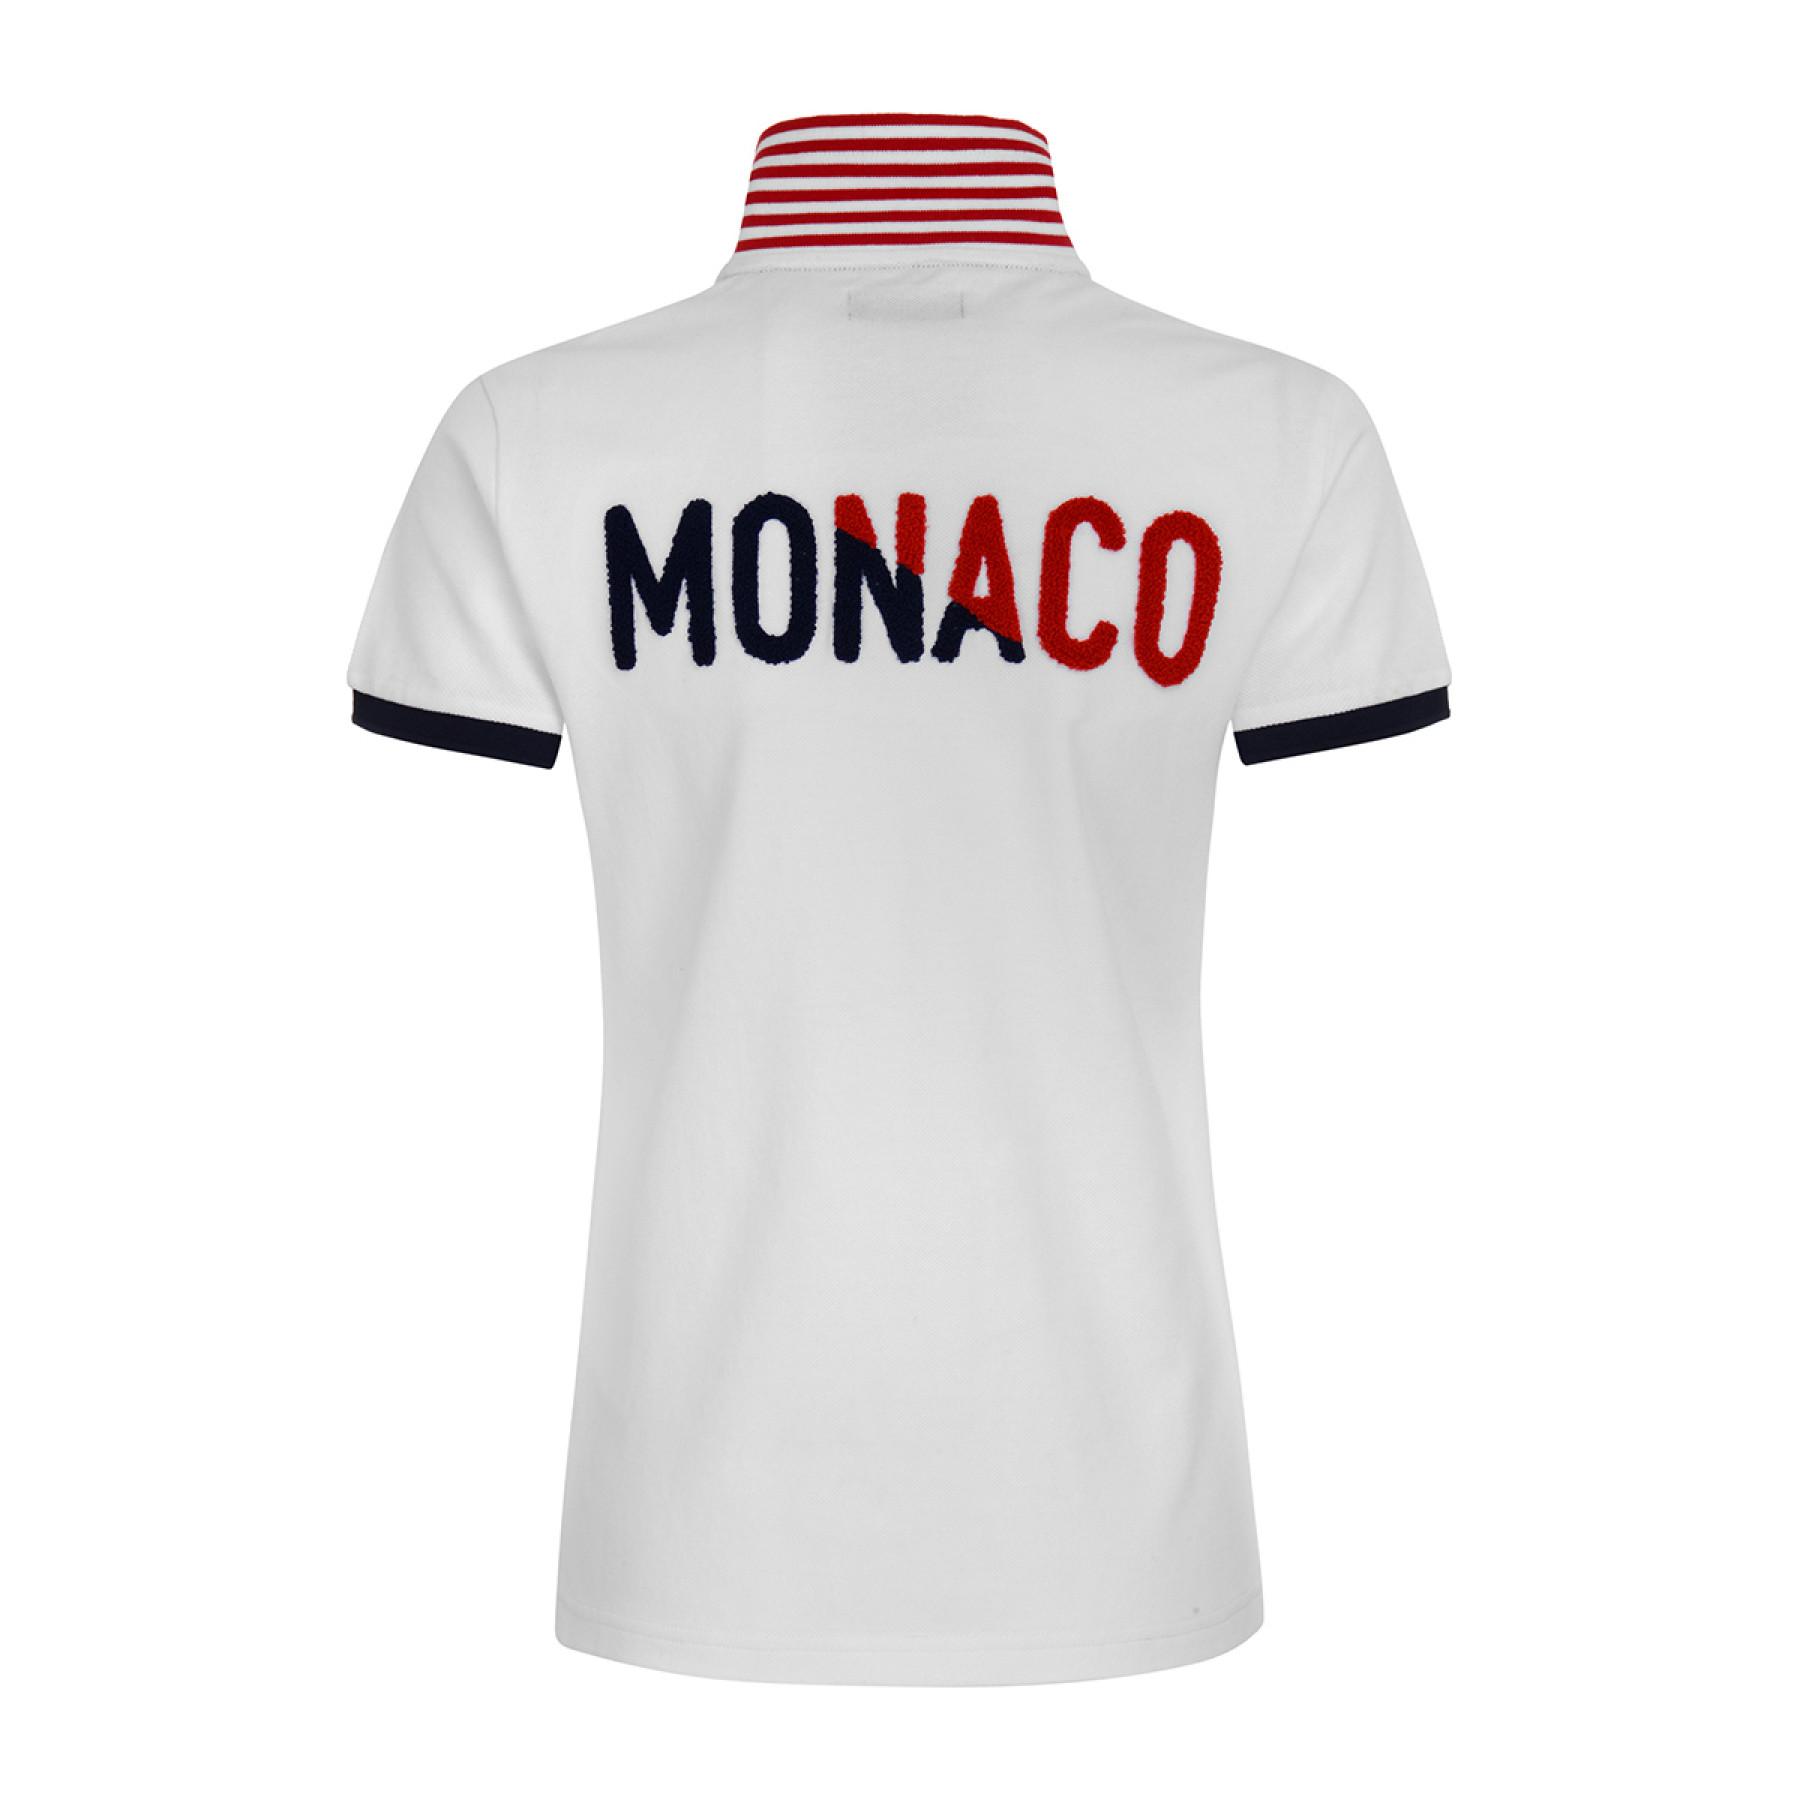 Damska koszulka polo AS Monaco 2020/21 blanche